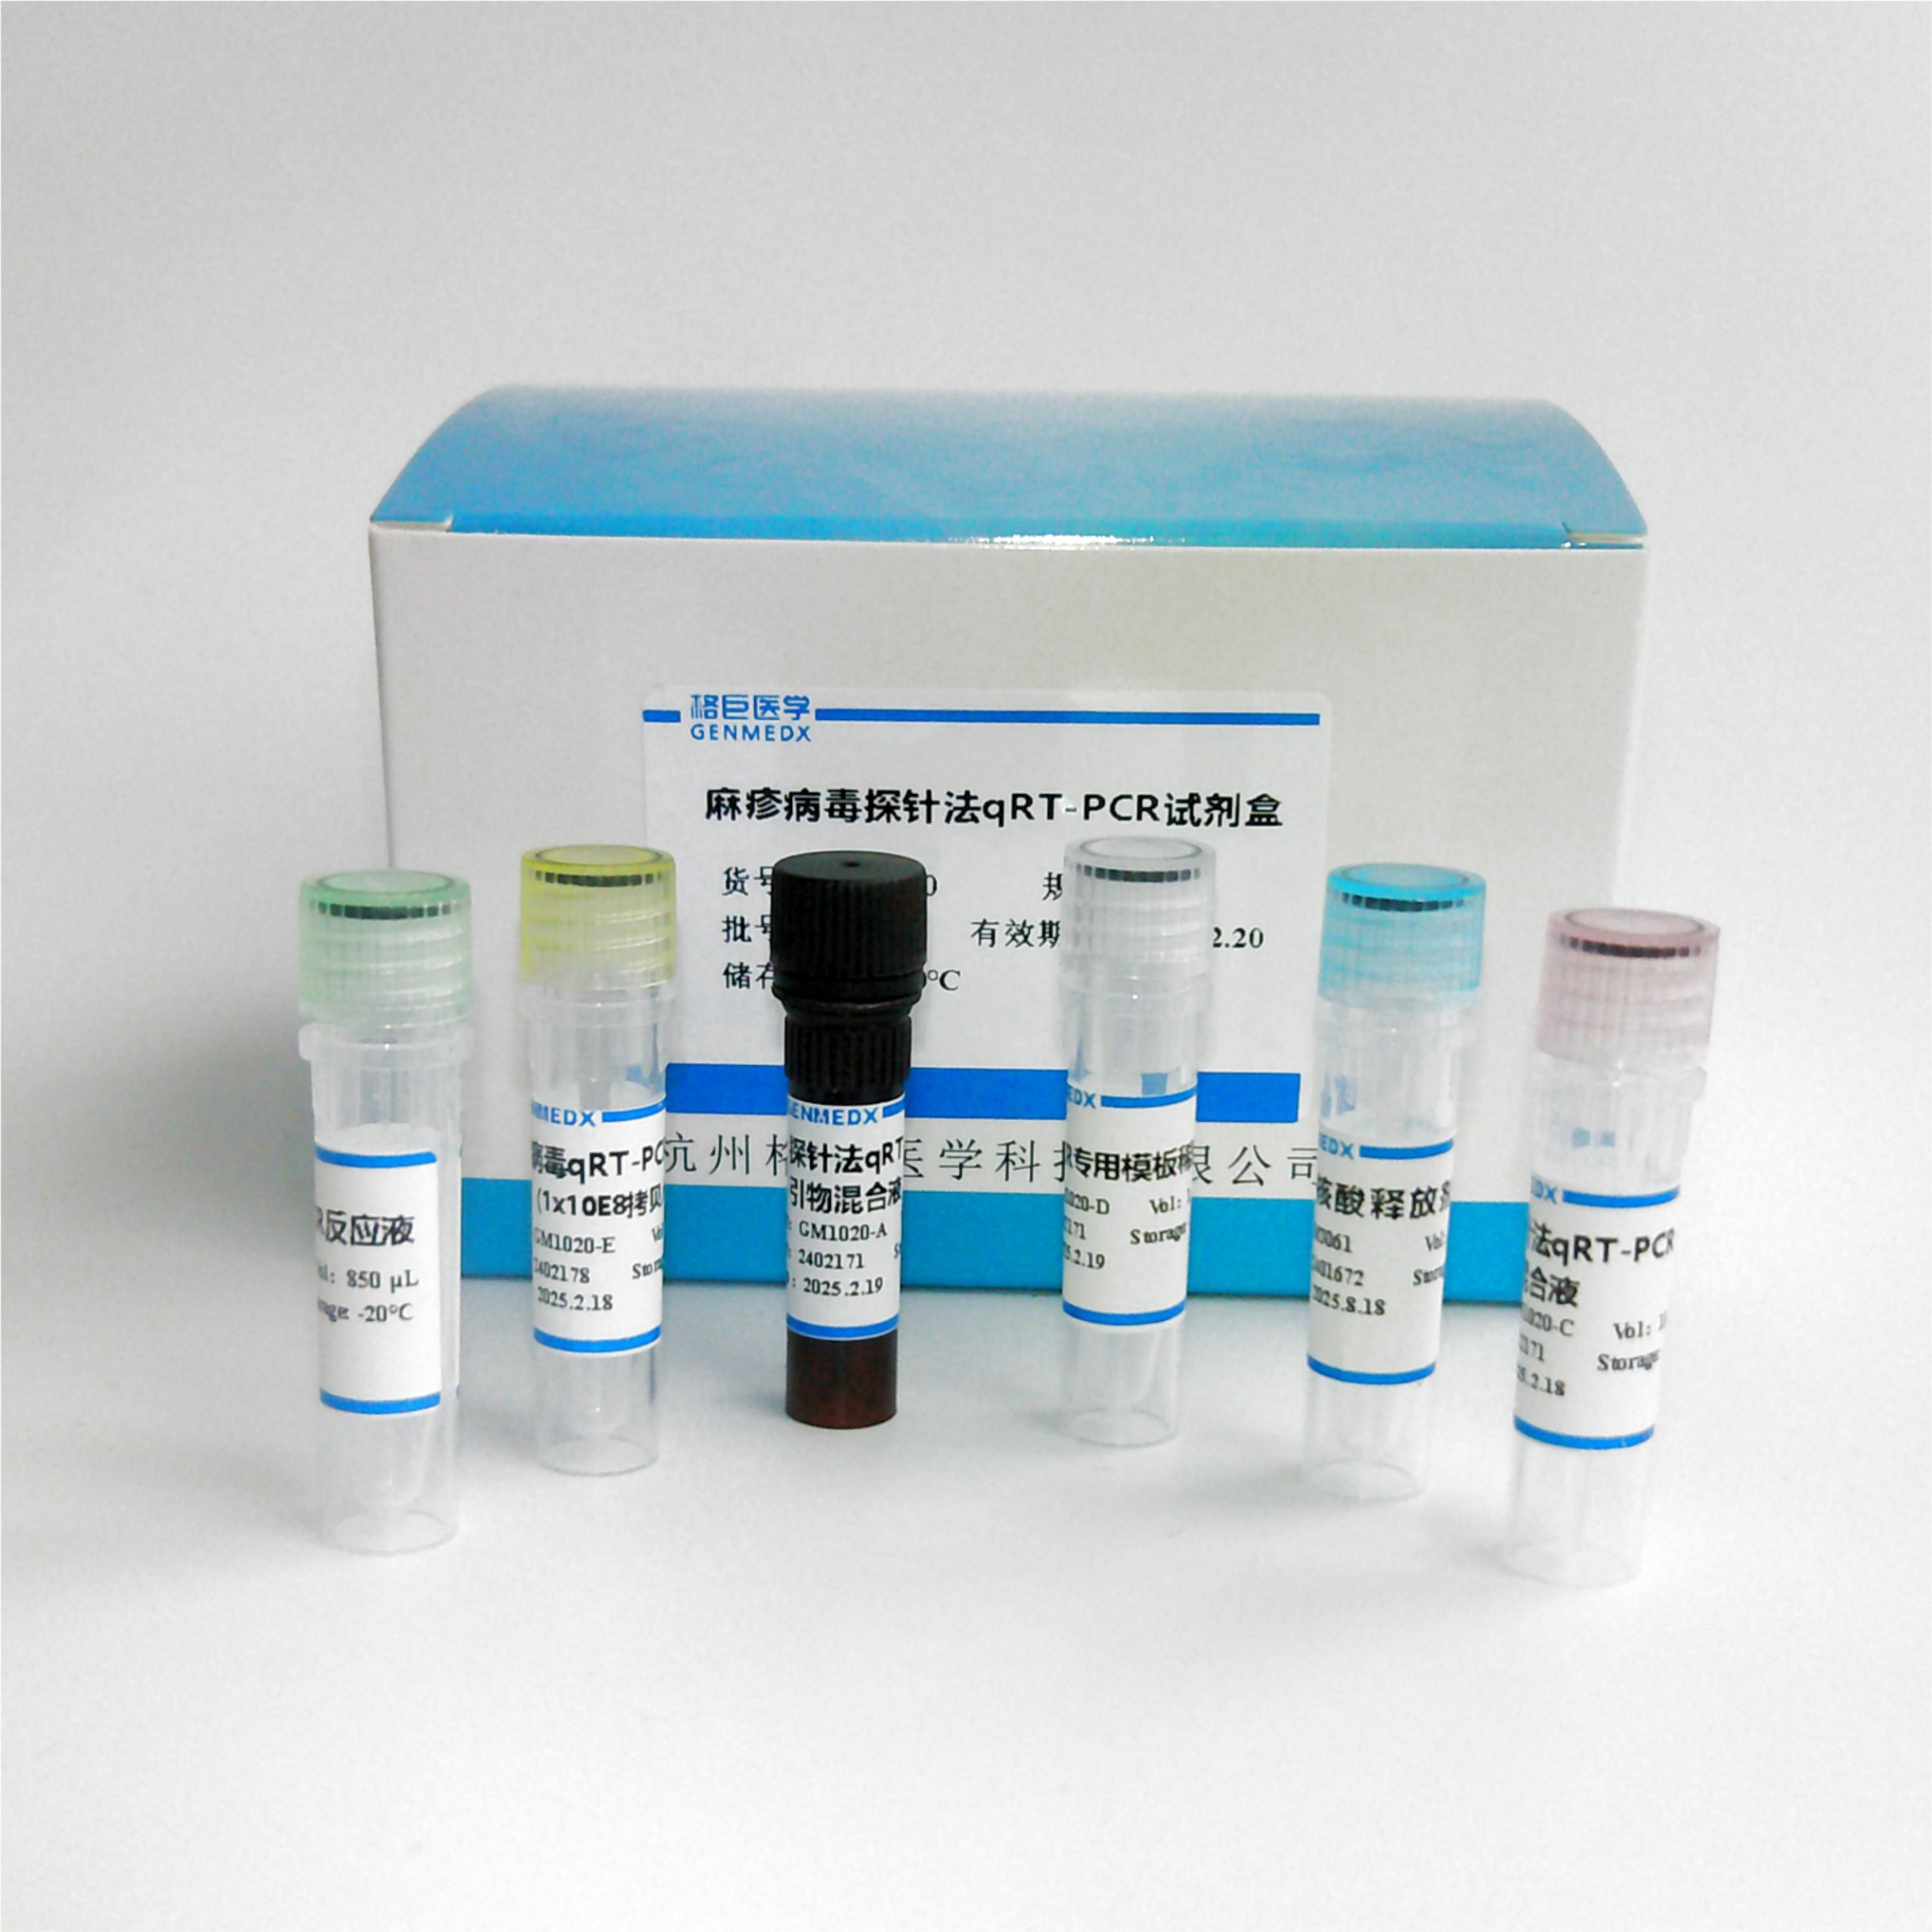 肠道病毒71型/柯萨奇病毒A16型/肠道病毒通用型三重荧光PCR试剂盒